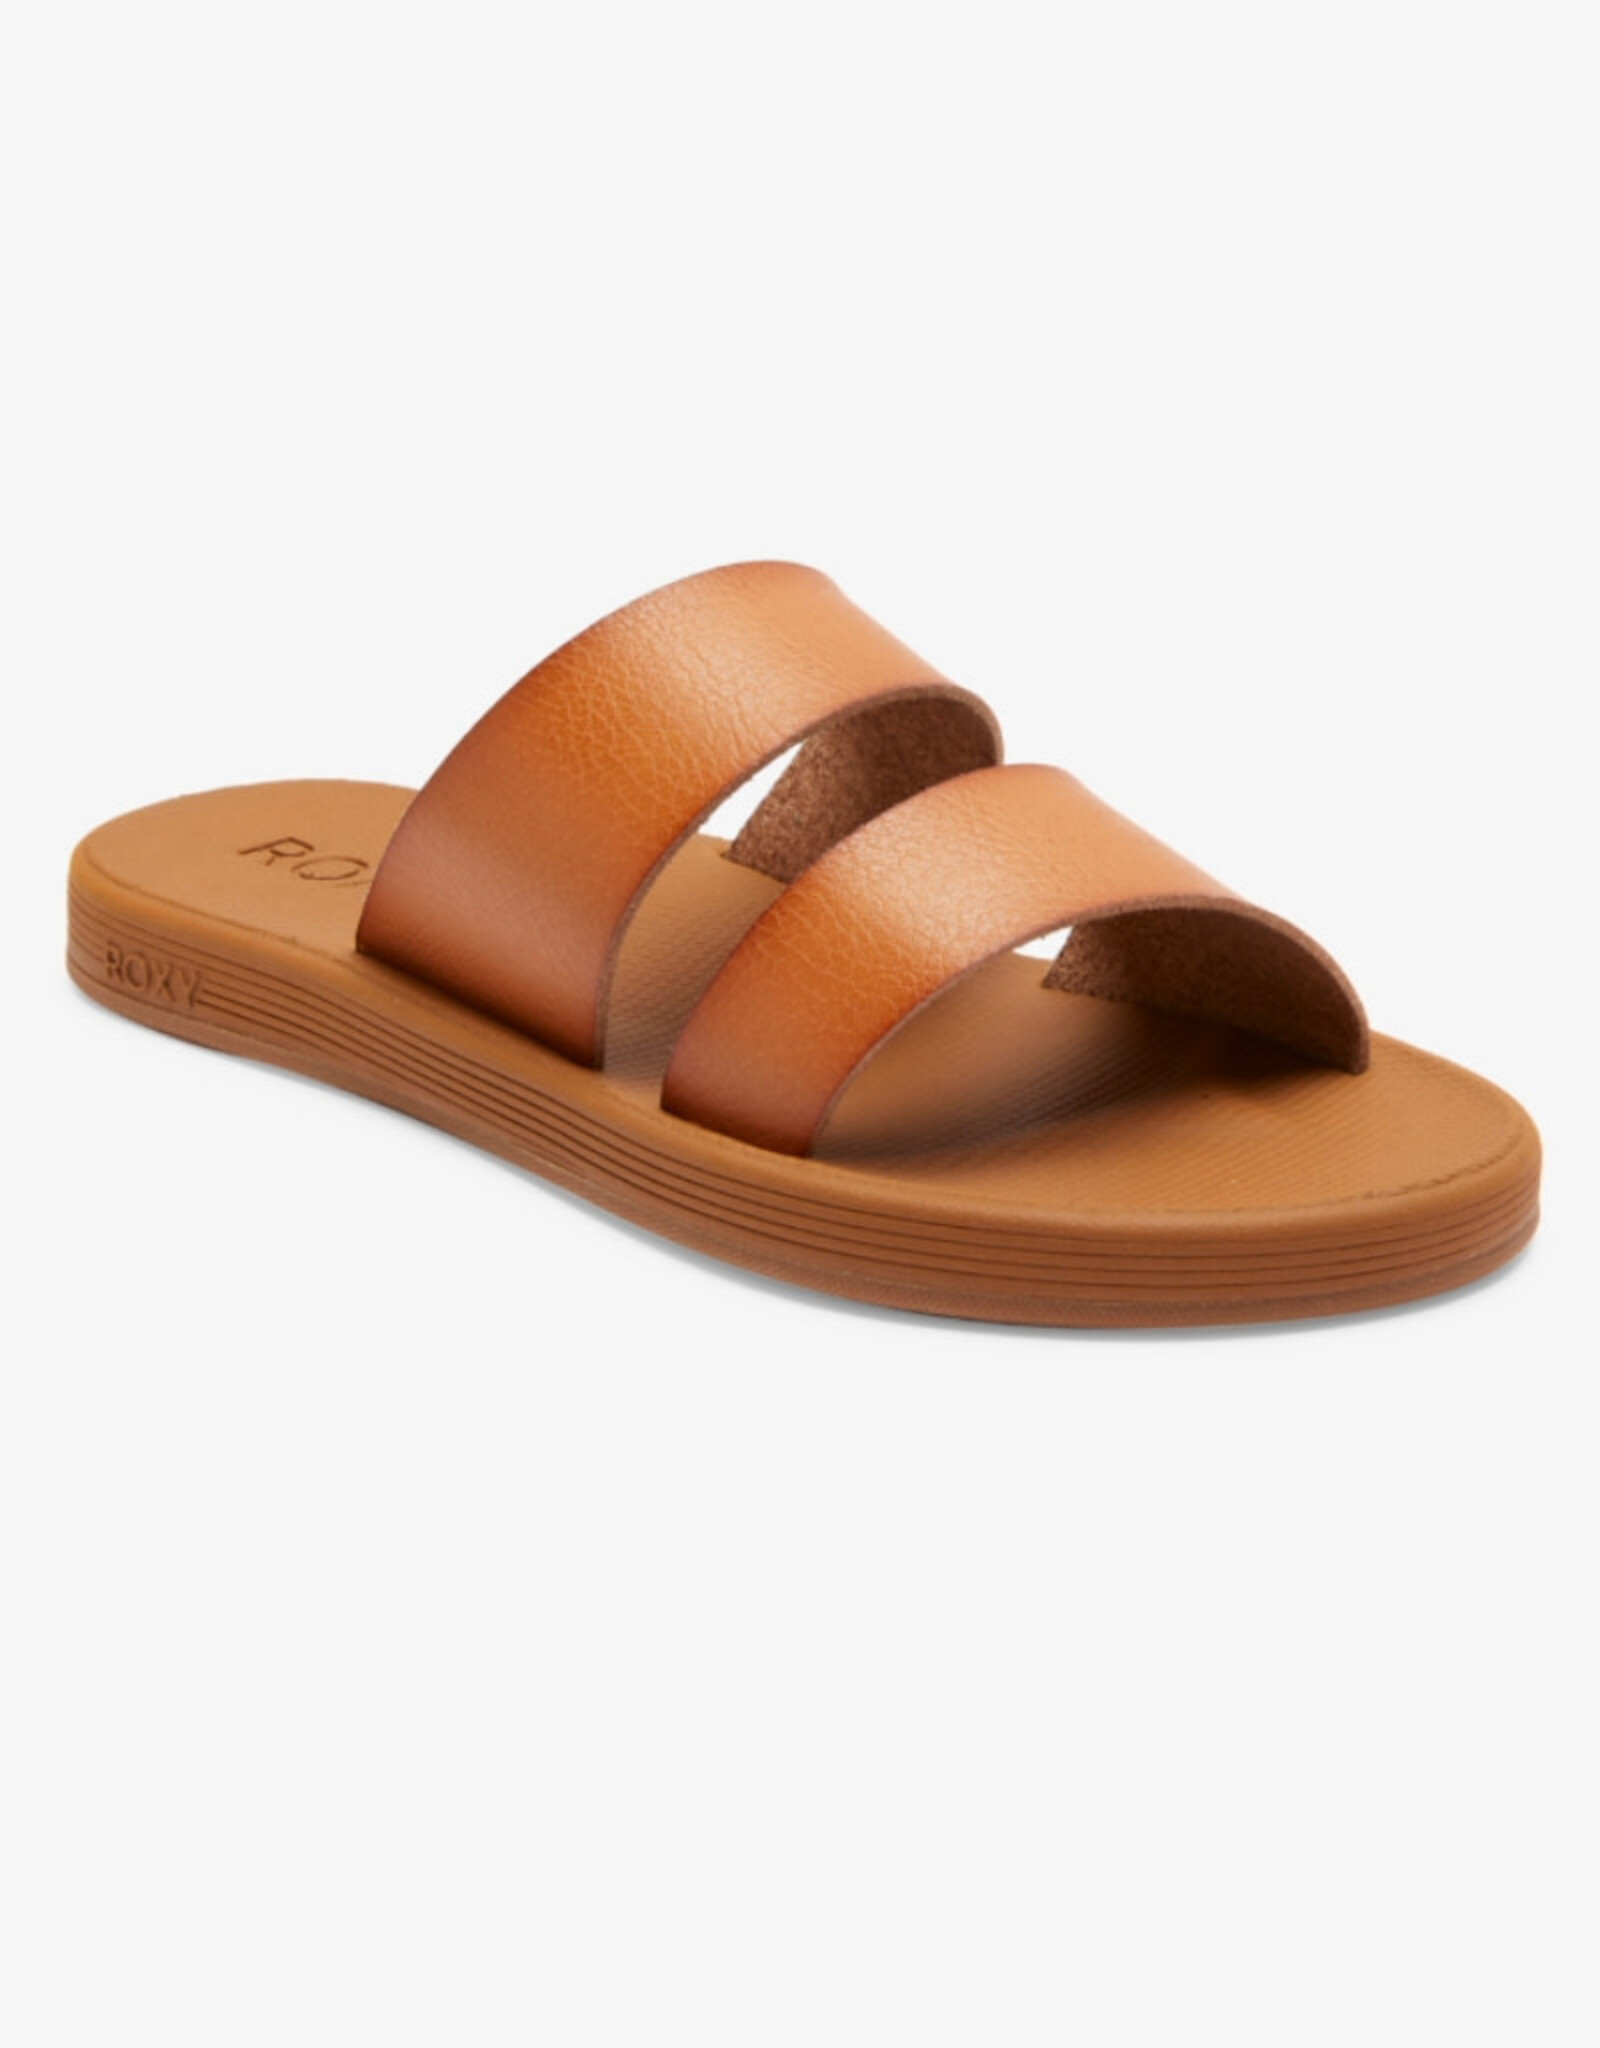 Roxy Roxy Coastal Cool Sandals Tan